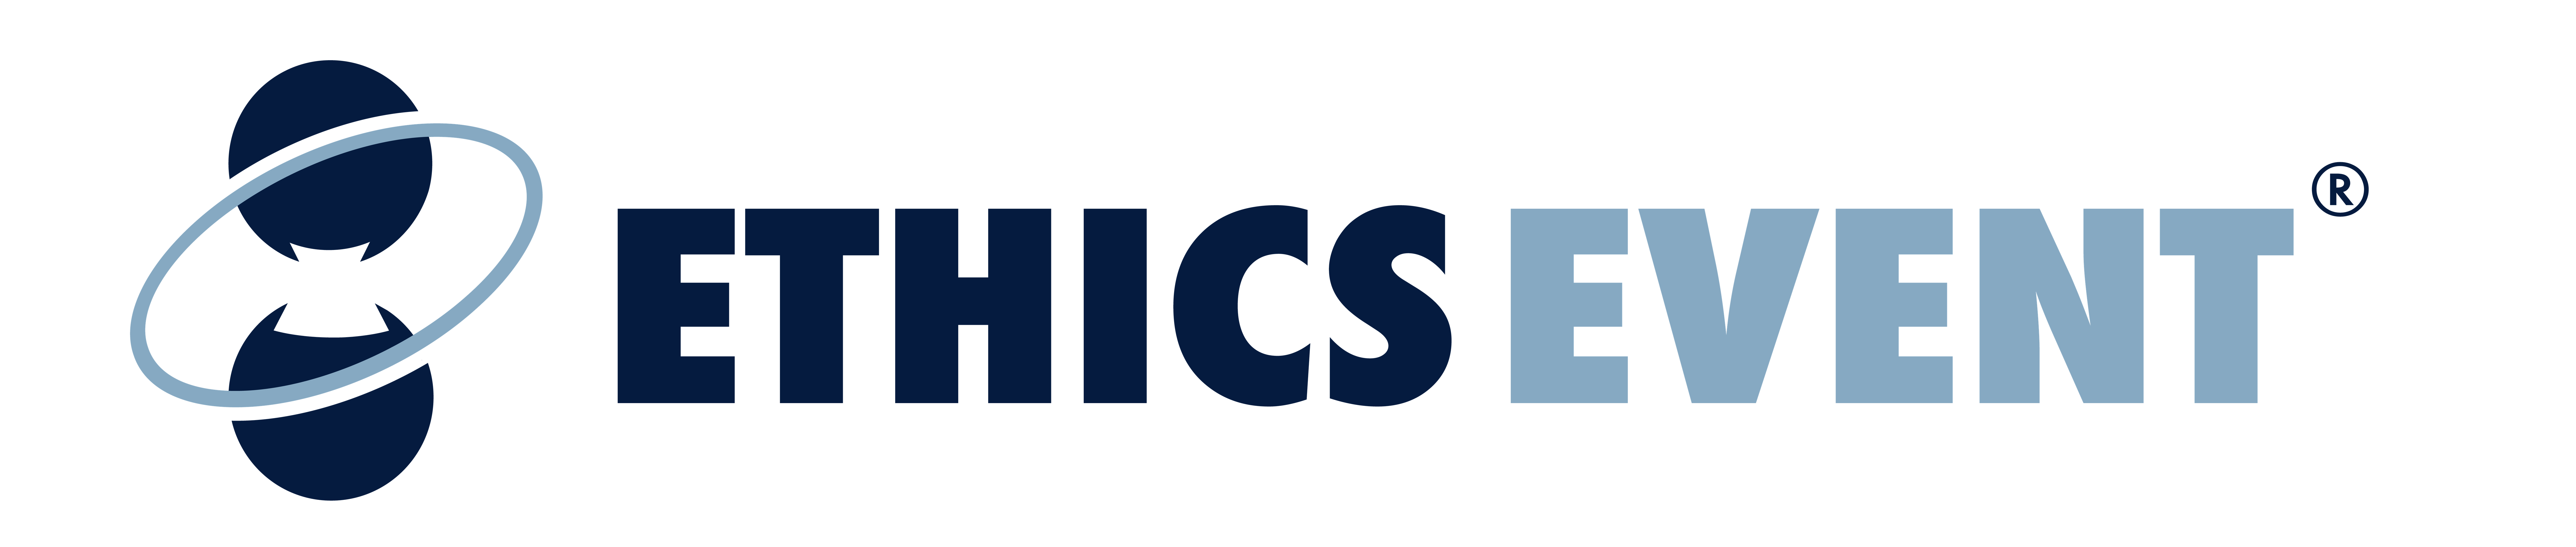 ETHICS EVENT logo